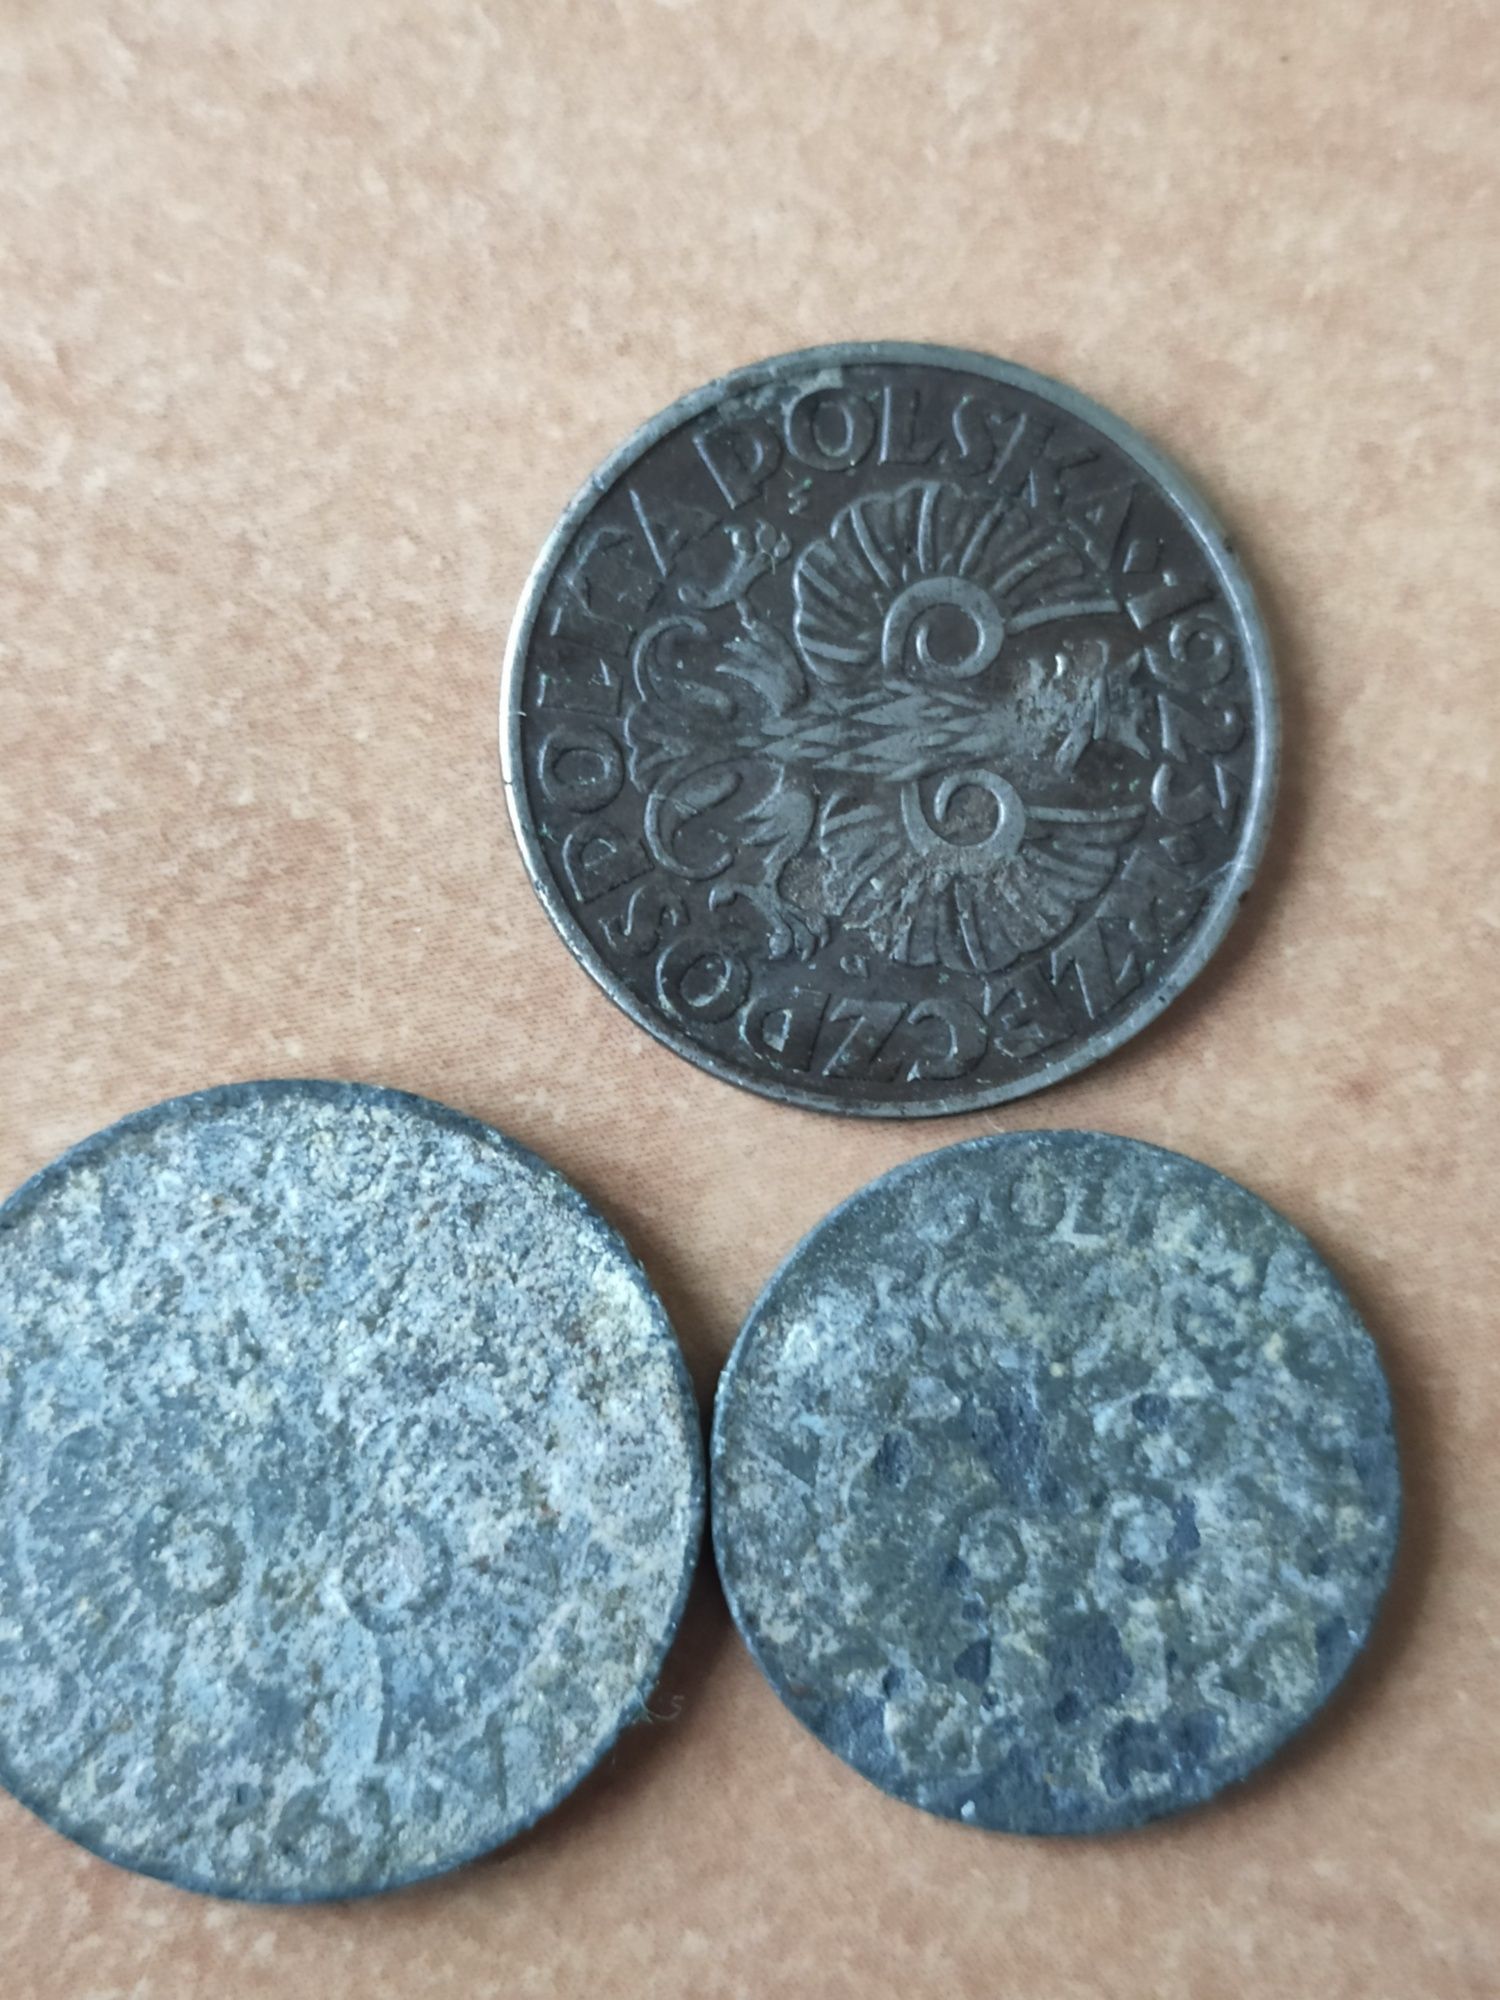 3 stare przedwojenne polskie monety - 2 x 20 groszy i 1 x 10 groszy